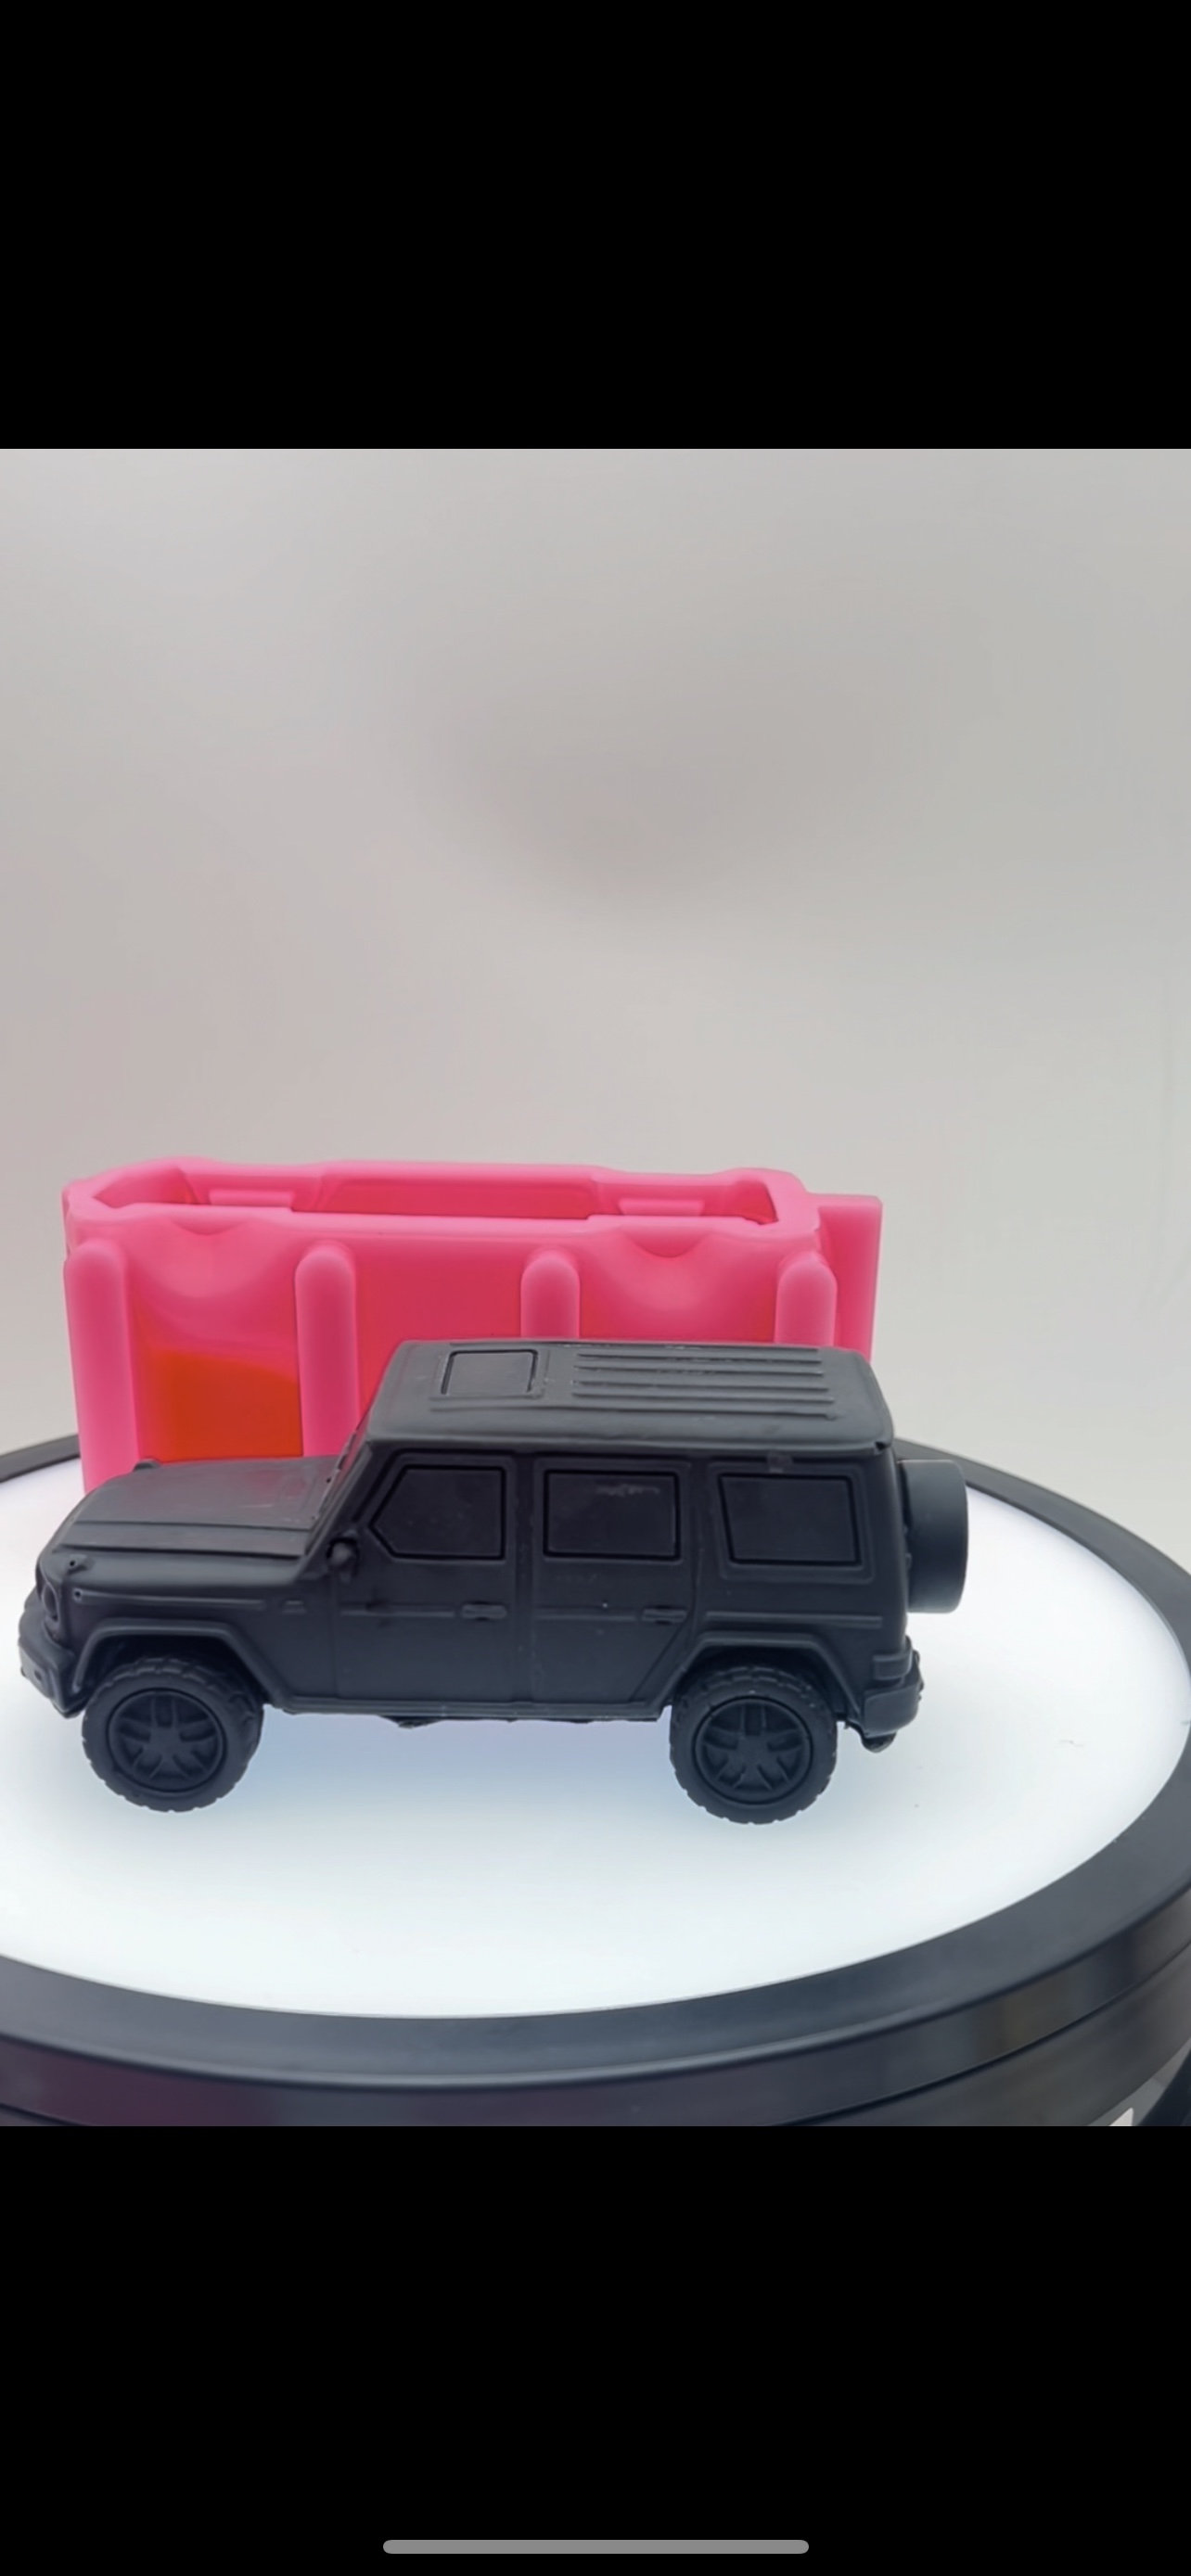 奔驰大G越野车汽车模具硅胶慕斯巧克力卡通烘焙蛋糕